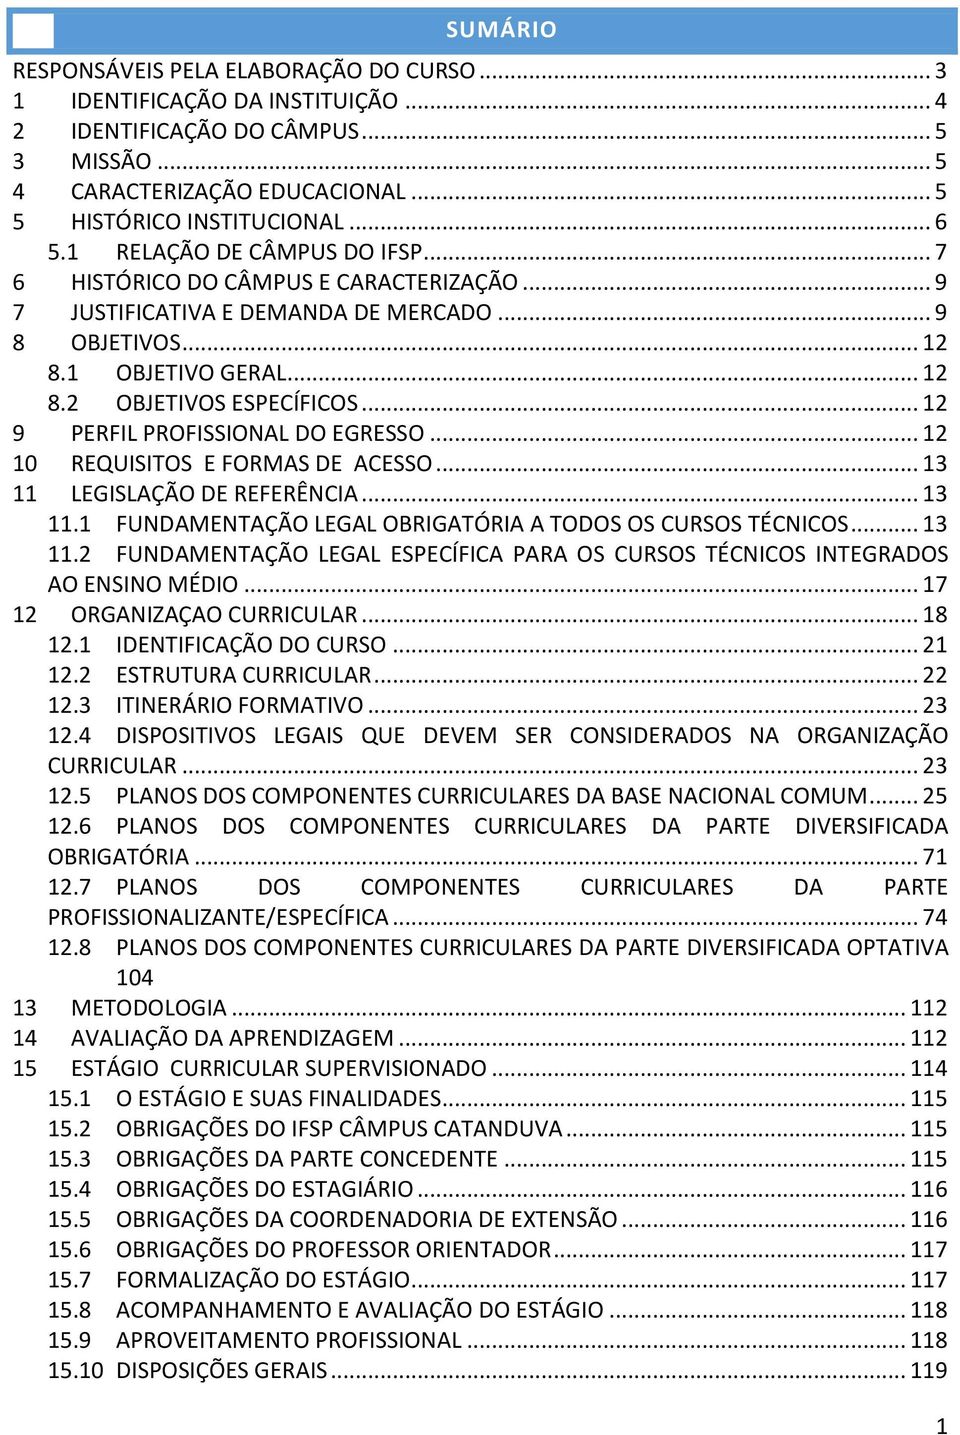 .. 12 9 PERFIL PROFISSIONAL DO EGRESSO... 12 10 REQUISITOS E FORMAS DE ACESSO... 13 11 LEGISLAÇÃO DE REFERÊNCIA... 13 11.1 FUNDAMENTAÇÃO LEGAL OBRIGATÓRIA A TODOS OS CURSOS TÉCNICOS... 13 11.2 FUNDAMENTAÇÃO LEGAL ESPECÍFICA PARA OS CURSOS TÉCNICOS INTEGRADOS AO ENSINO MÉDIO.